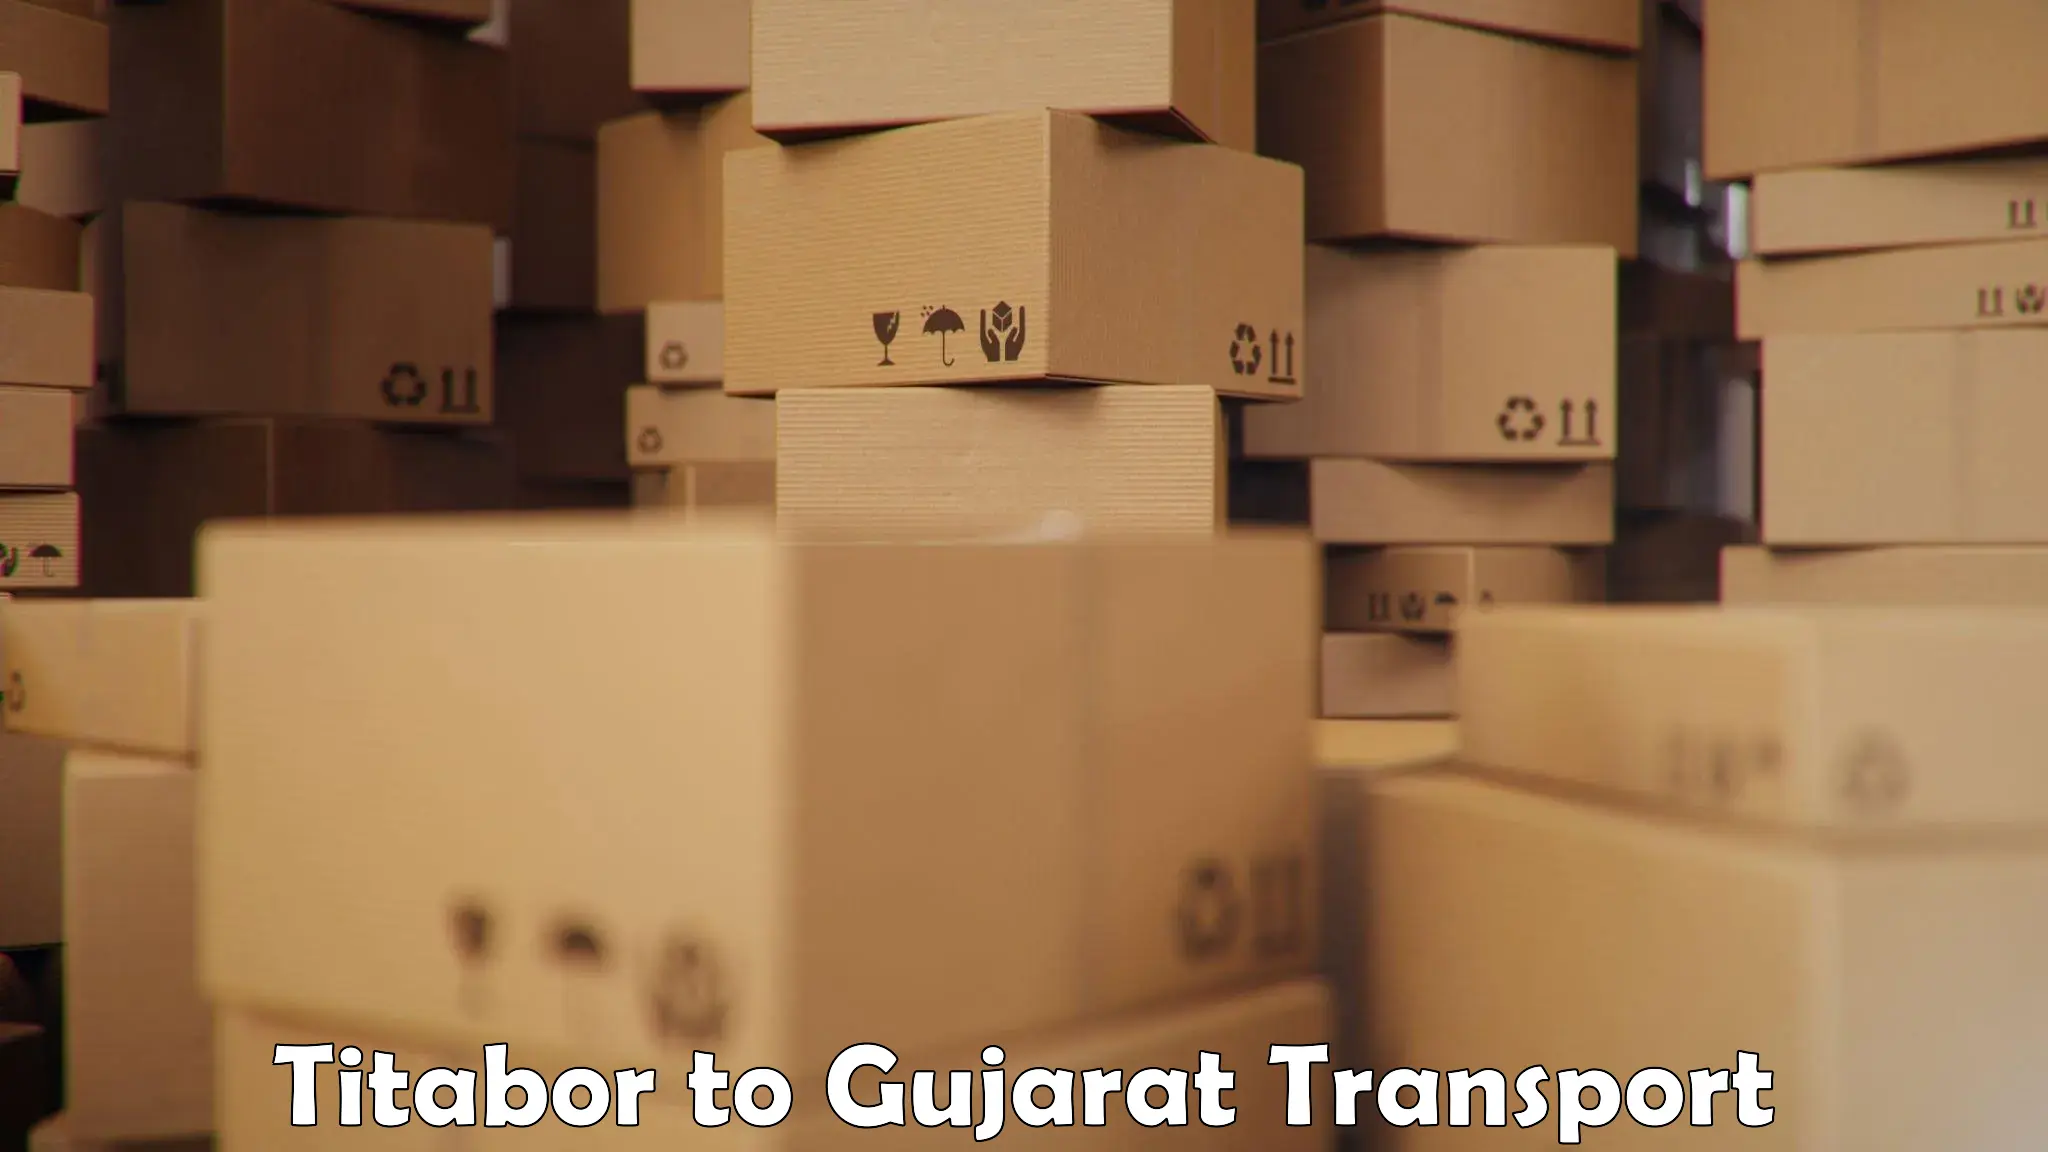 Furniture transport service Titabor to Vadnagar